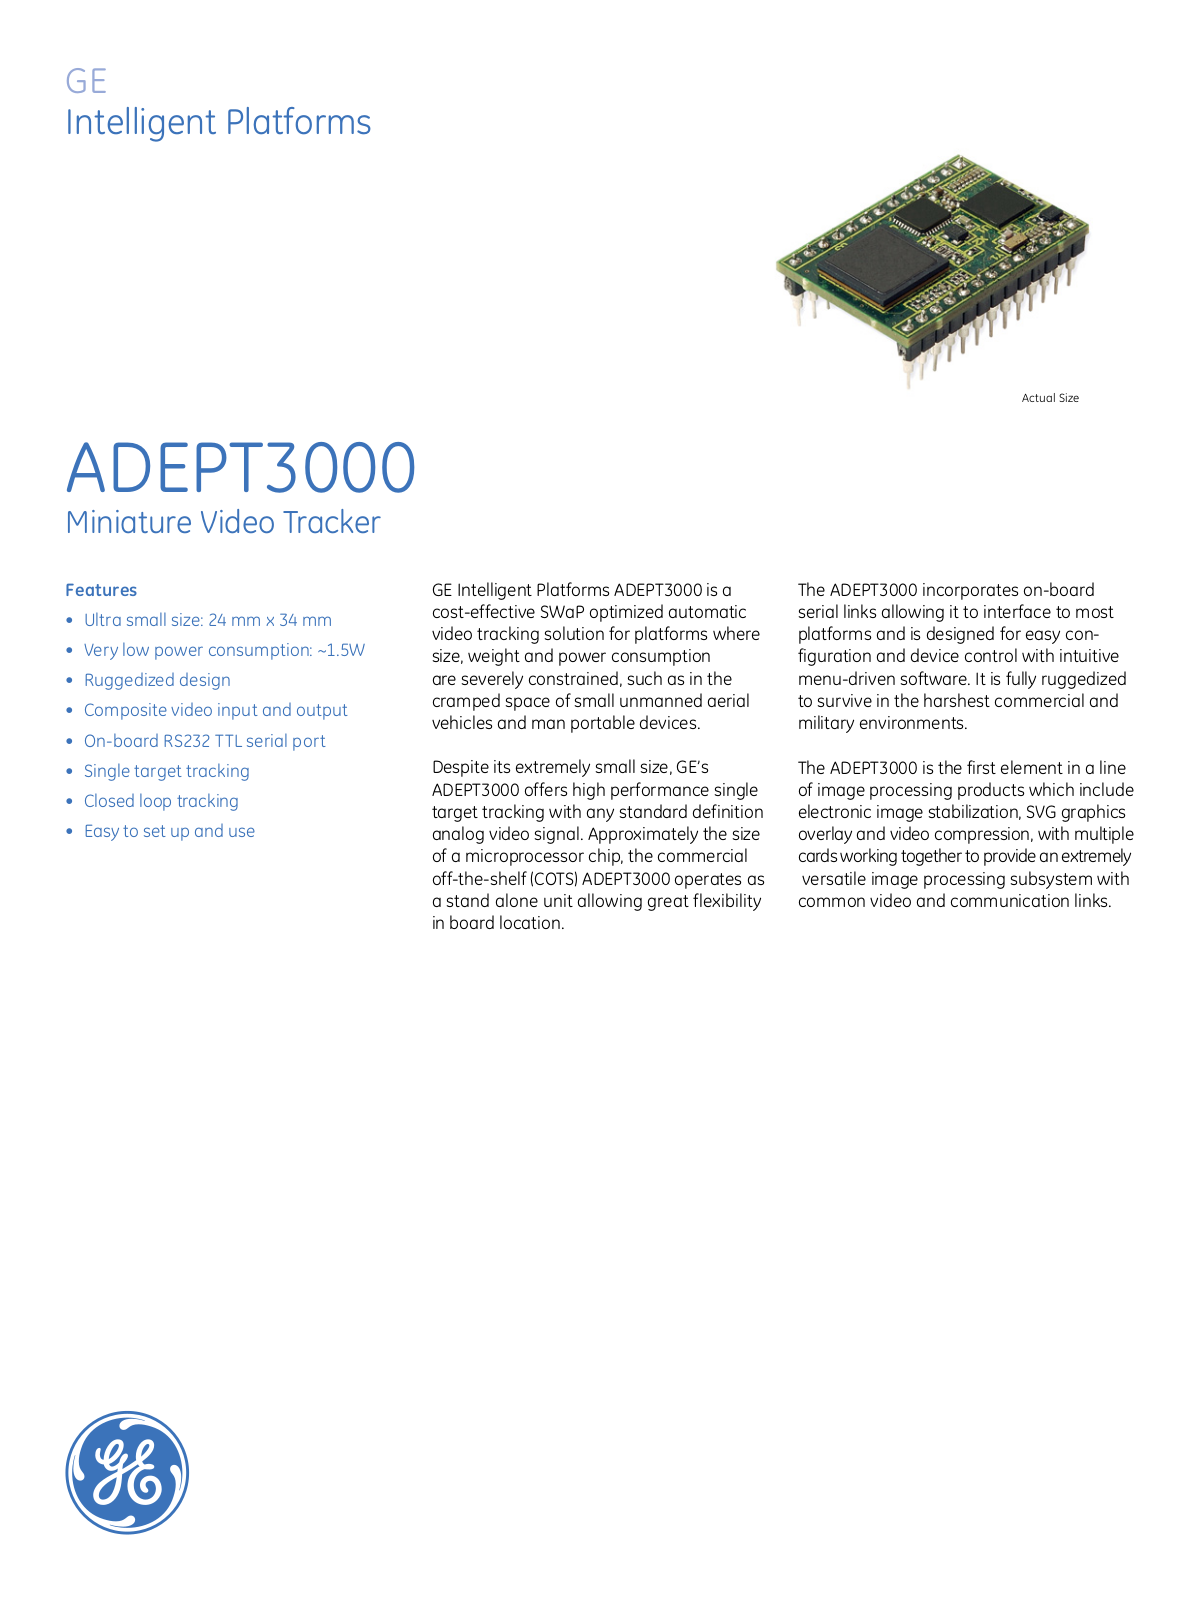 GE ADEPT3000 Data Sheet